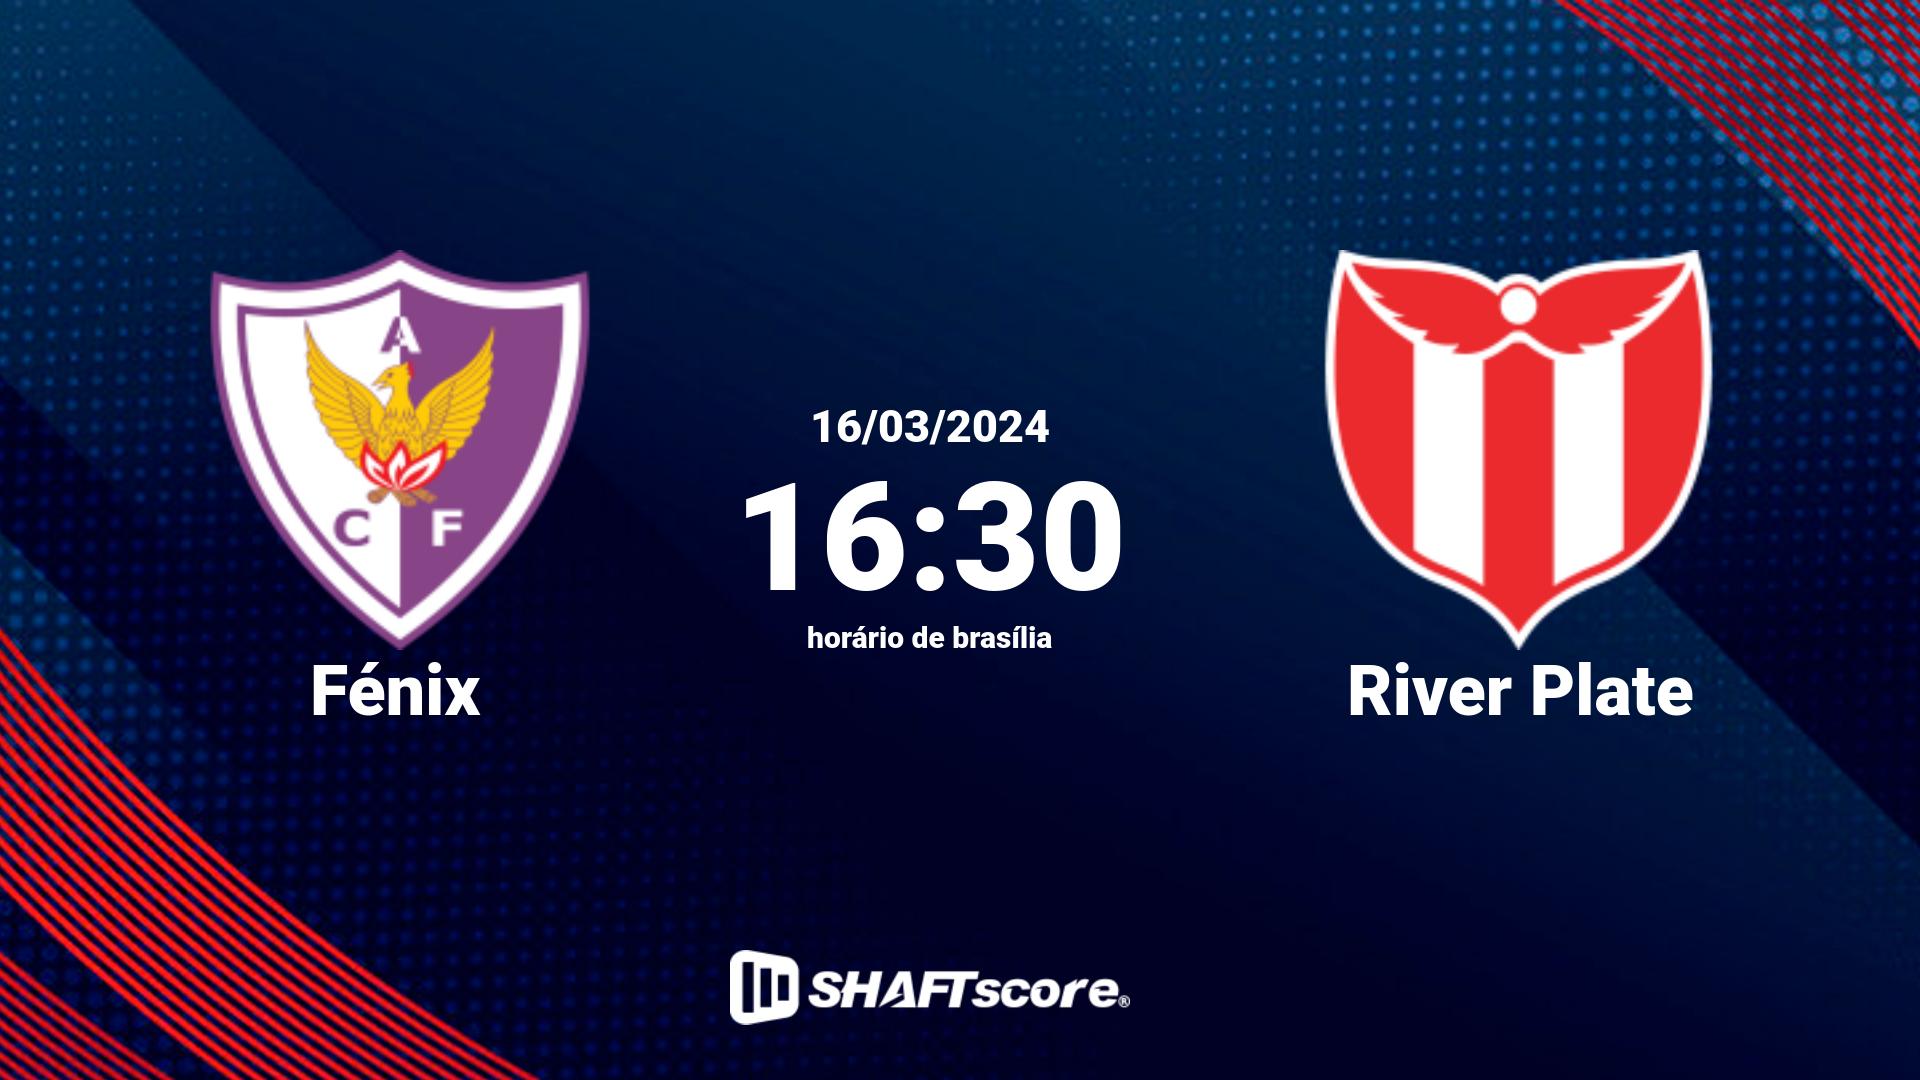 Estatísticas do jogo Fénix vs River Plate 16.03 16:30